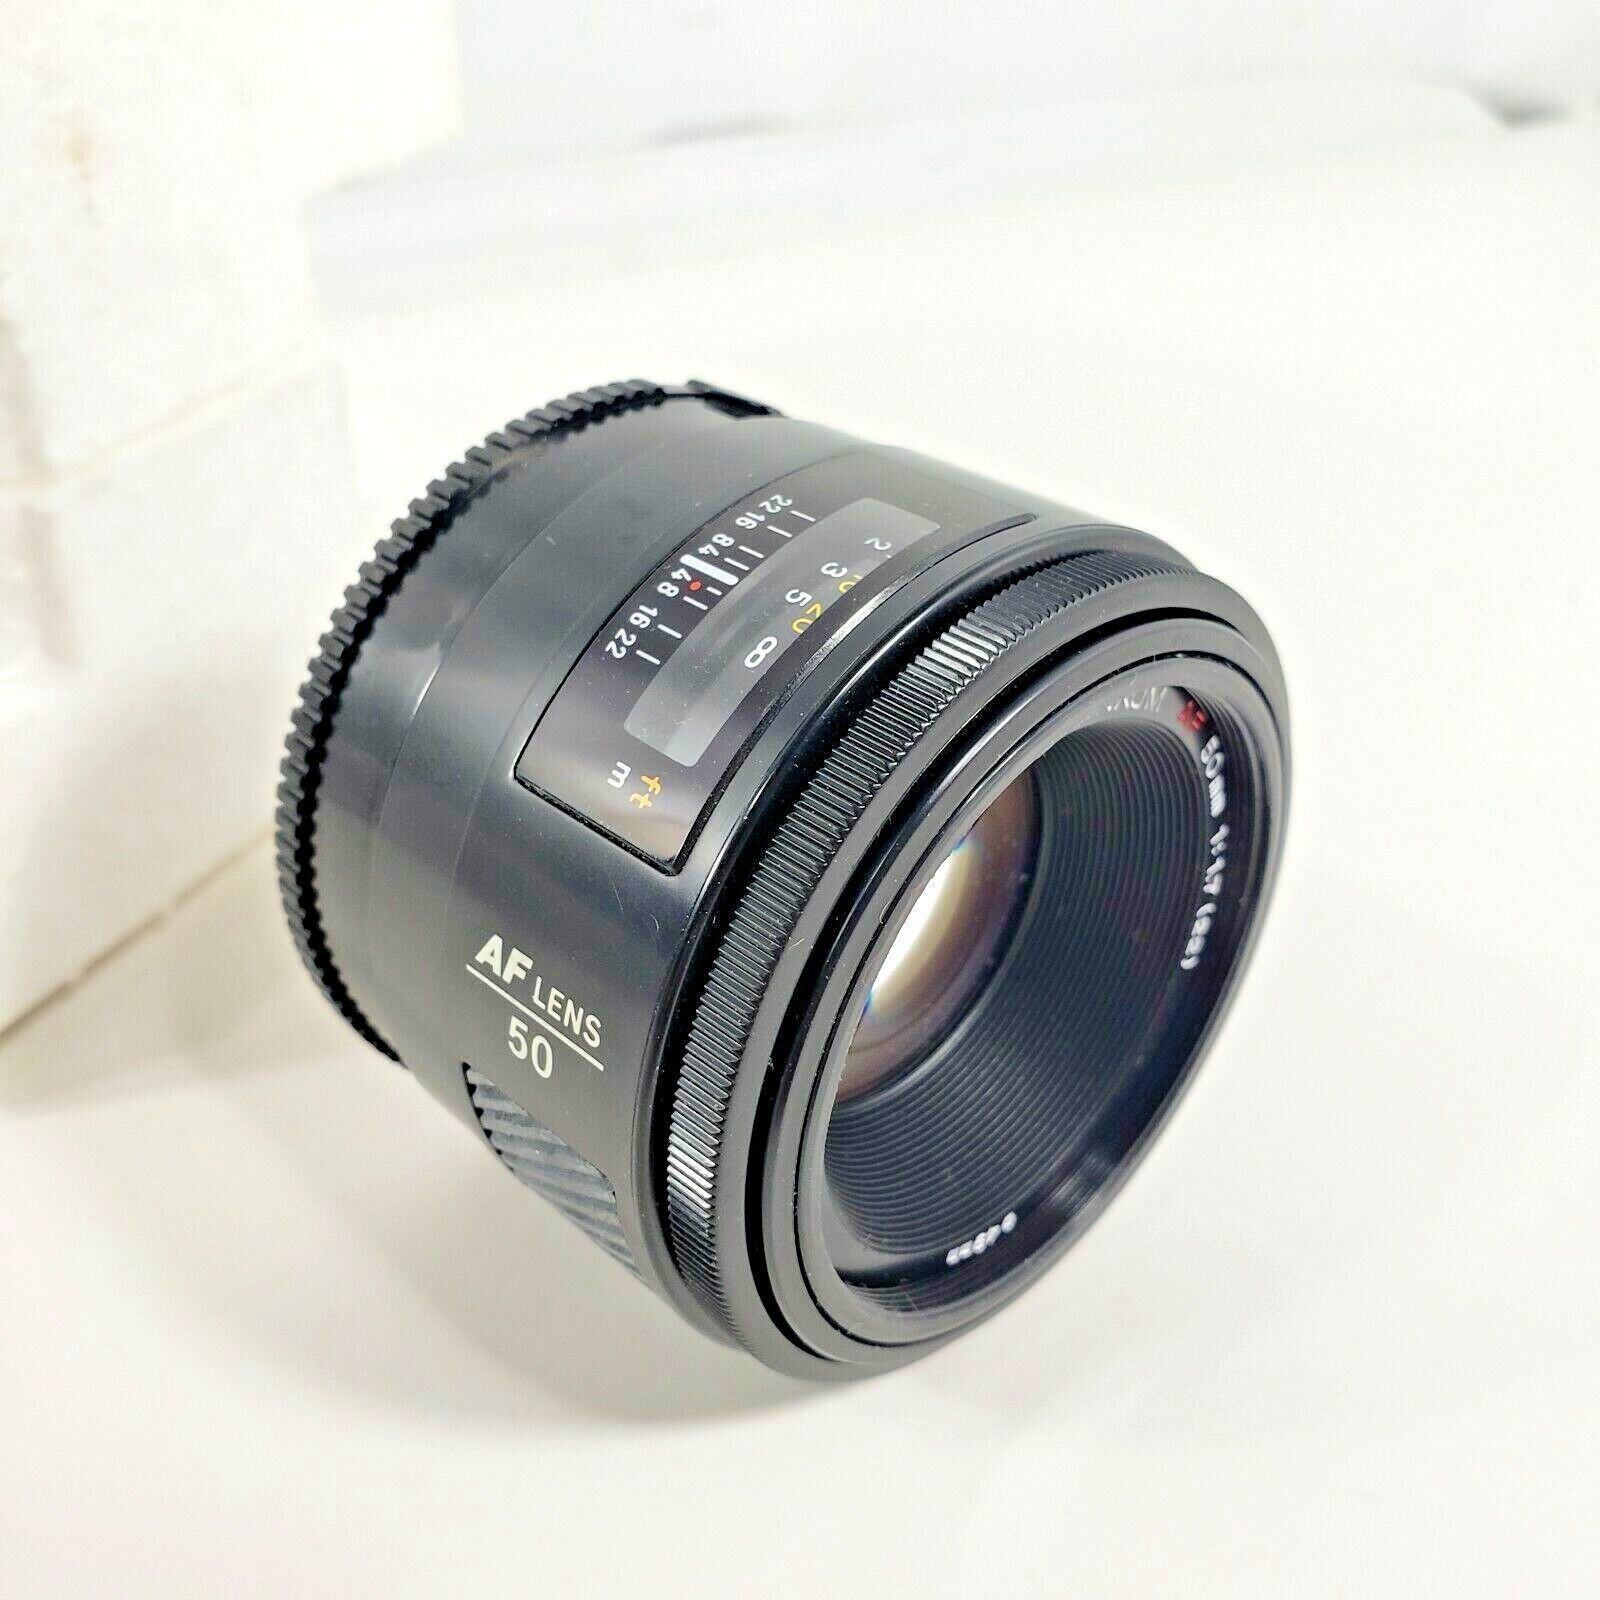 Primary image for Minolta Maxxum AF 50mm  1:1.7 (22) Lens 49mm Japan 20220994